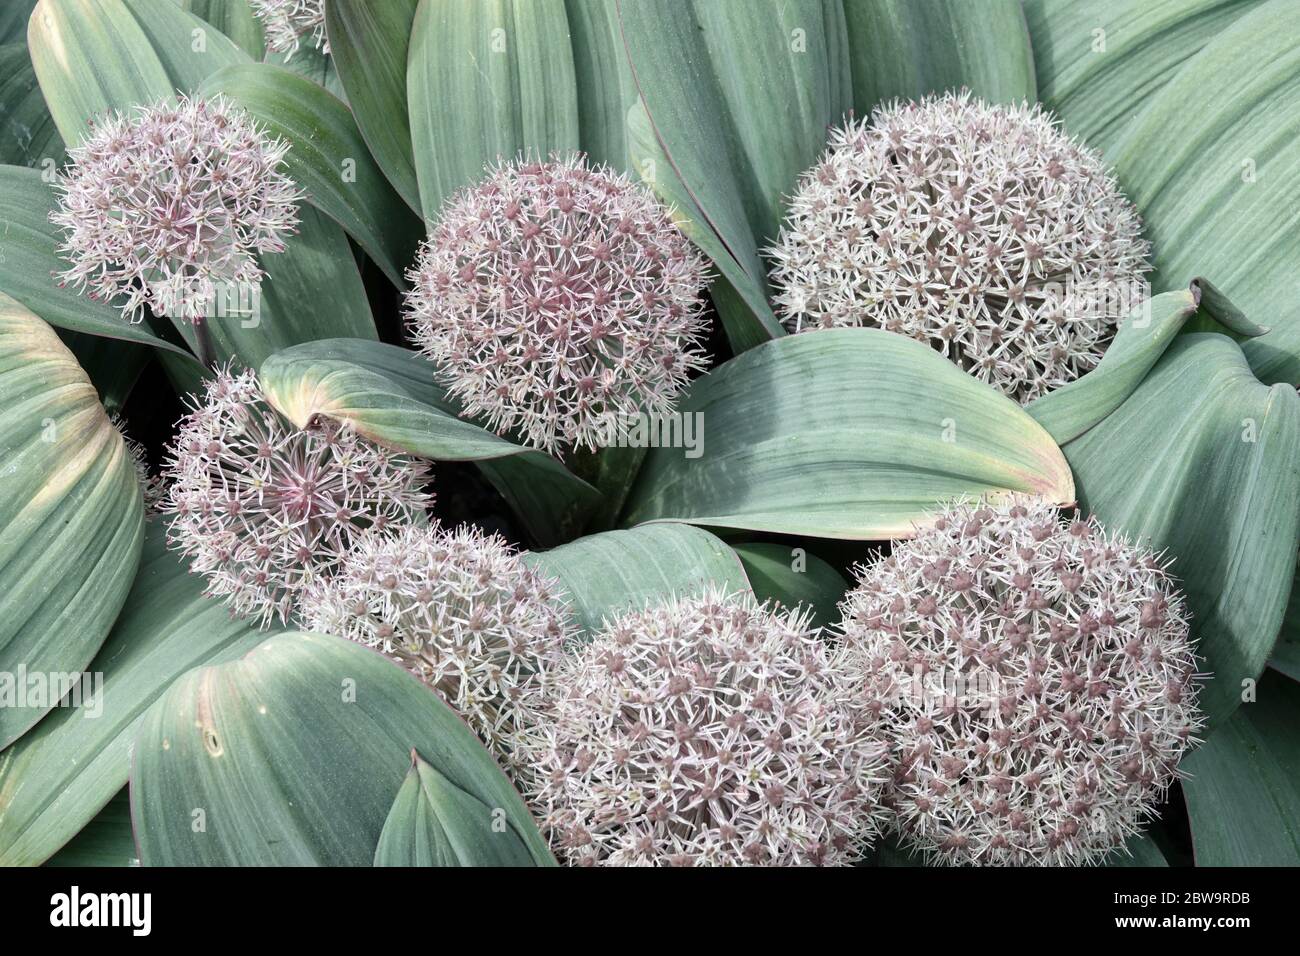 Turkestan Onion Allium karataviense Stock Photo